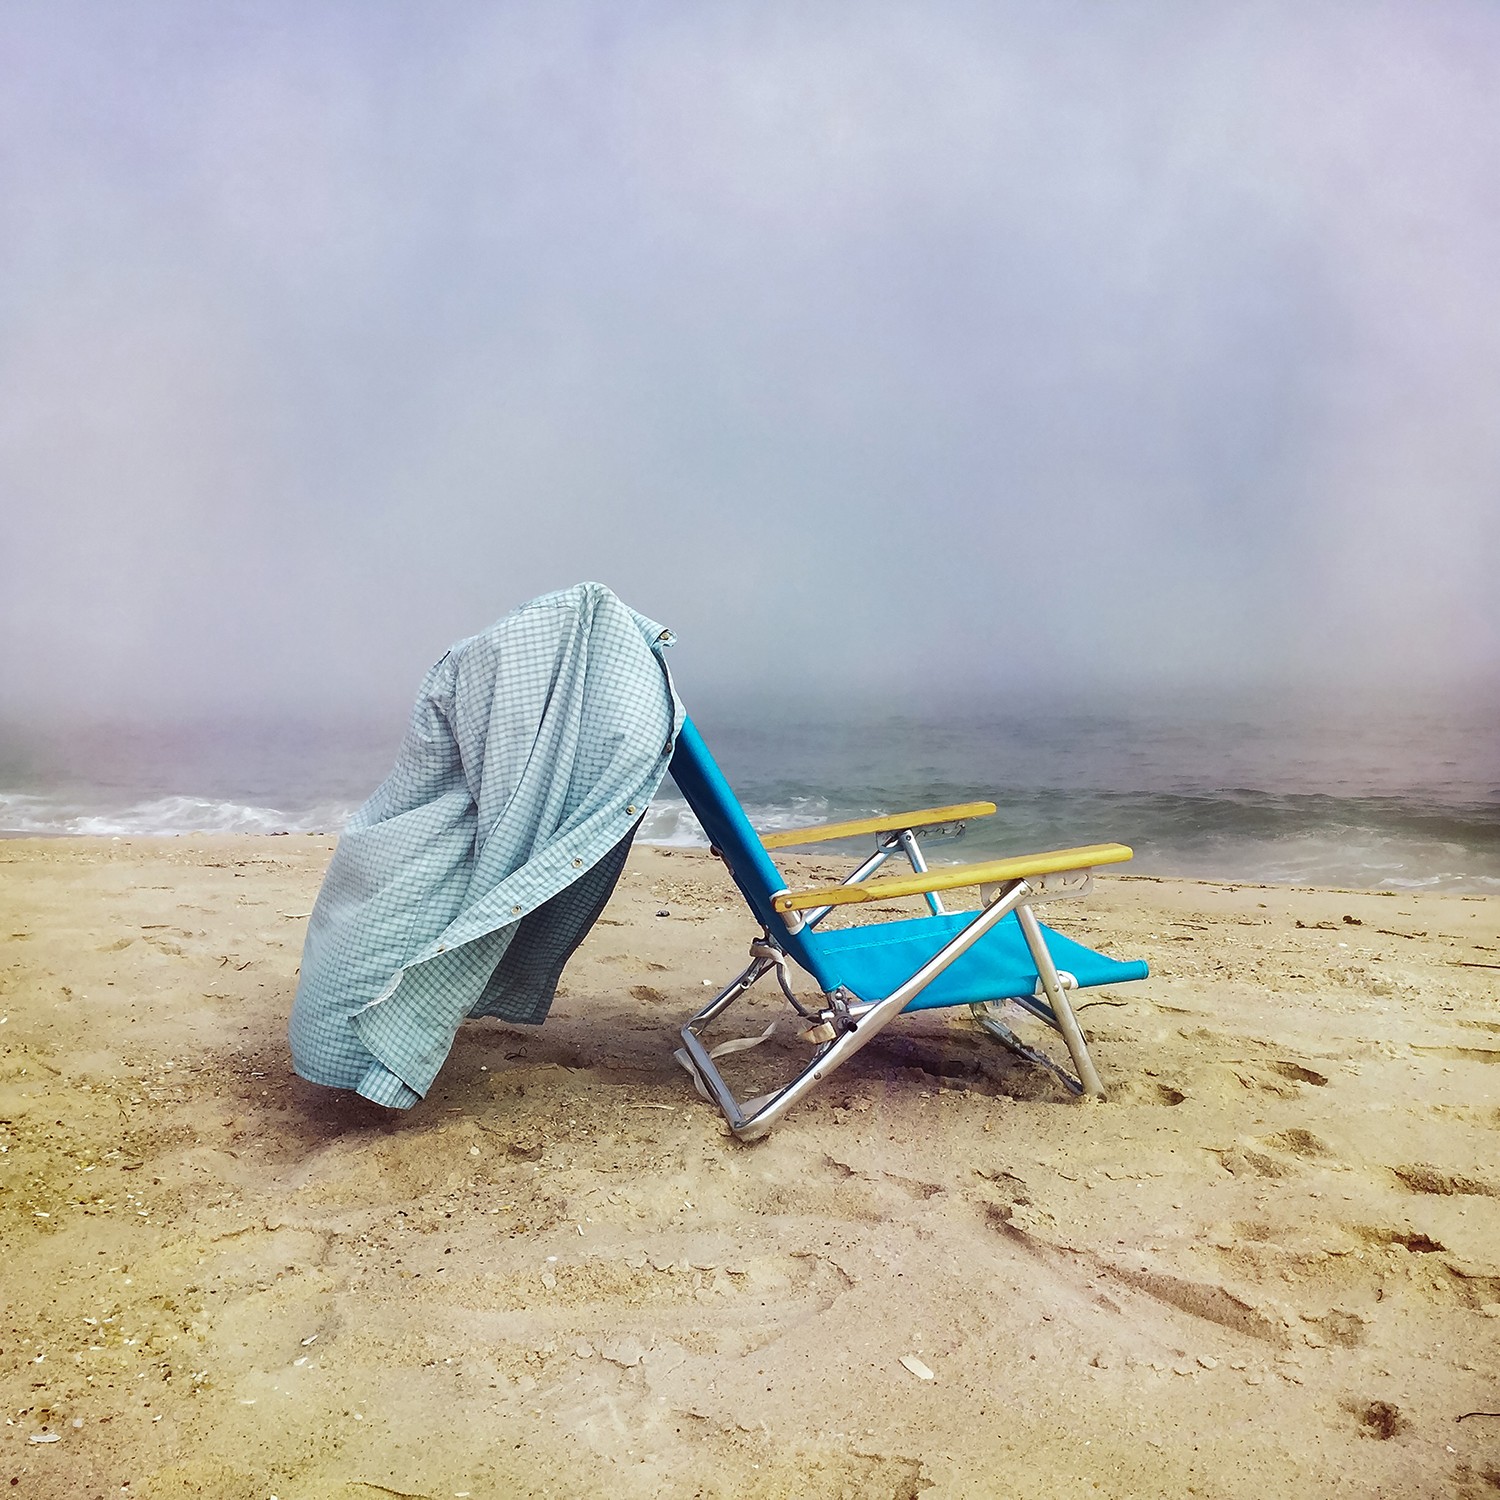 1 место в категории Другое, 2020. Пляжный стул, Уэстхемптон-Бич, Нью-Йорк. Автор Даниэль Моир